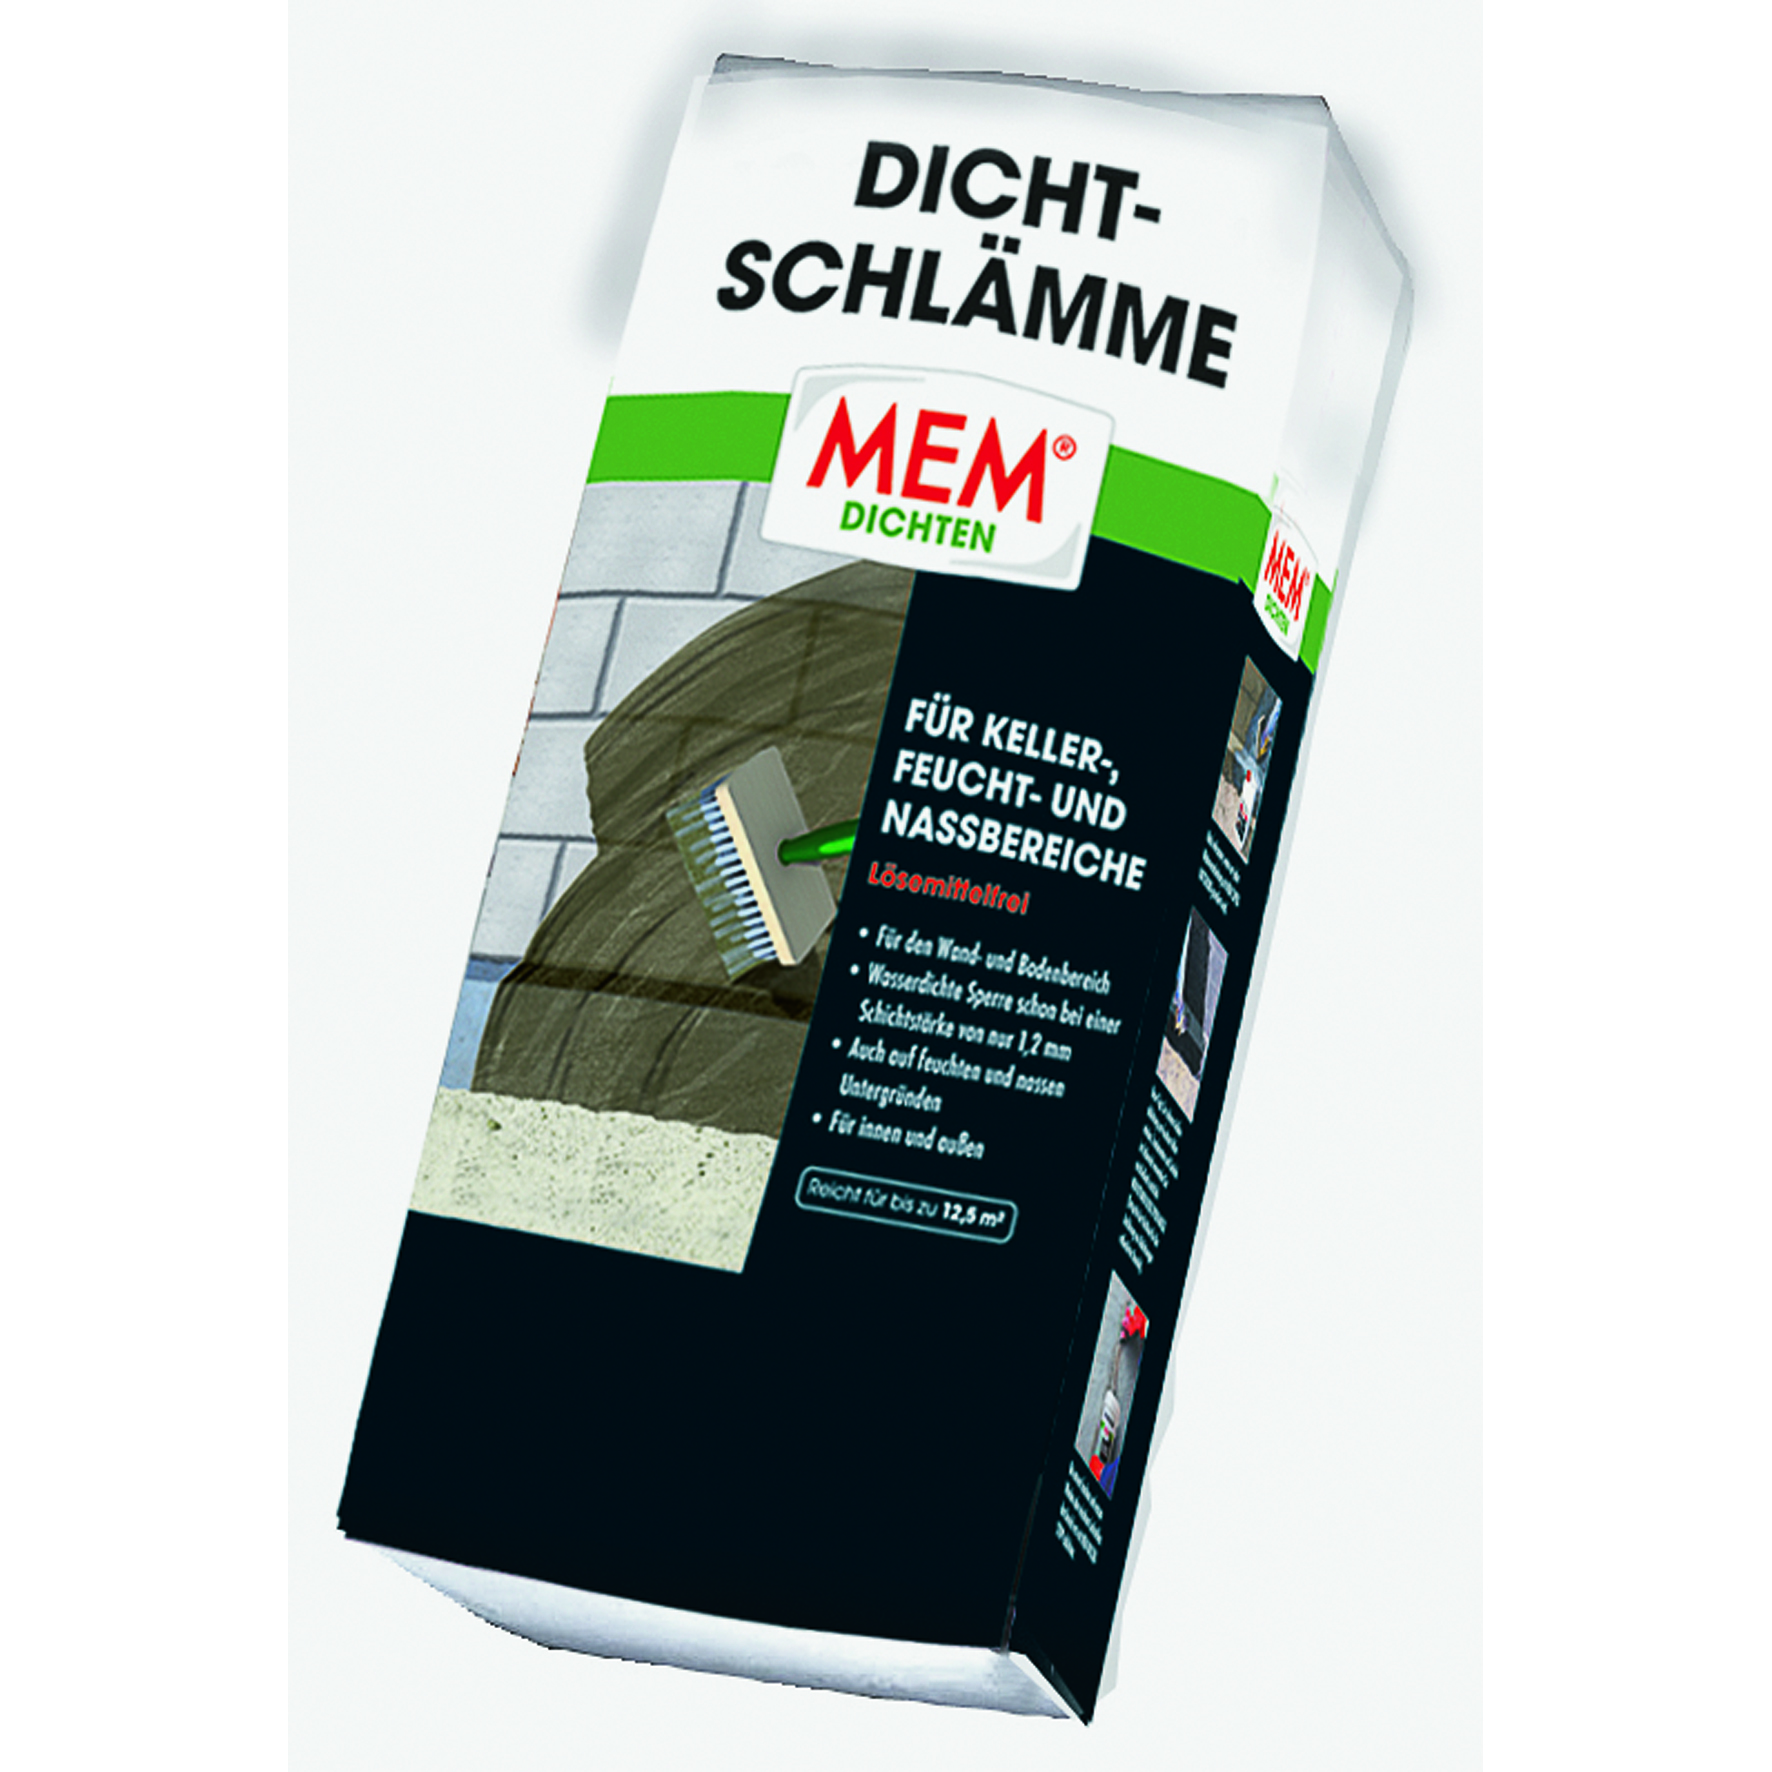 MEM Bauchemie GmbH MEM Dichtschlämme